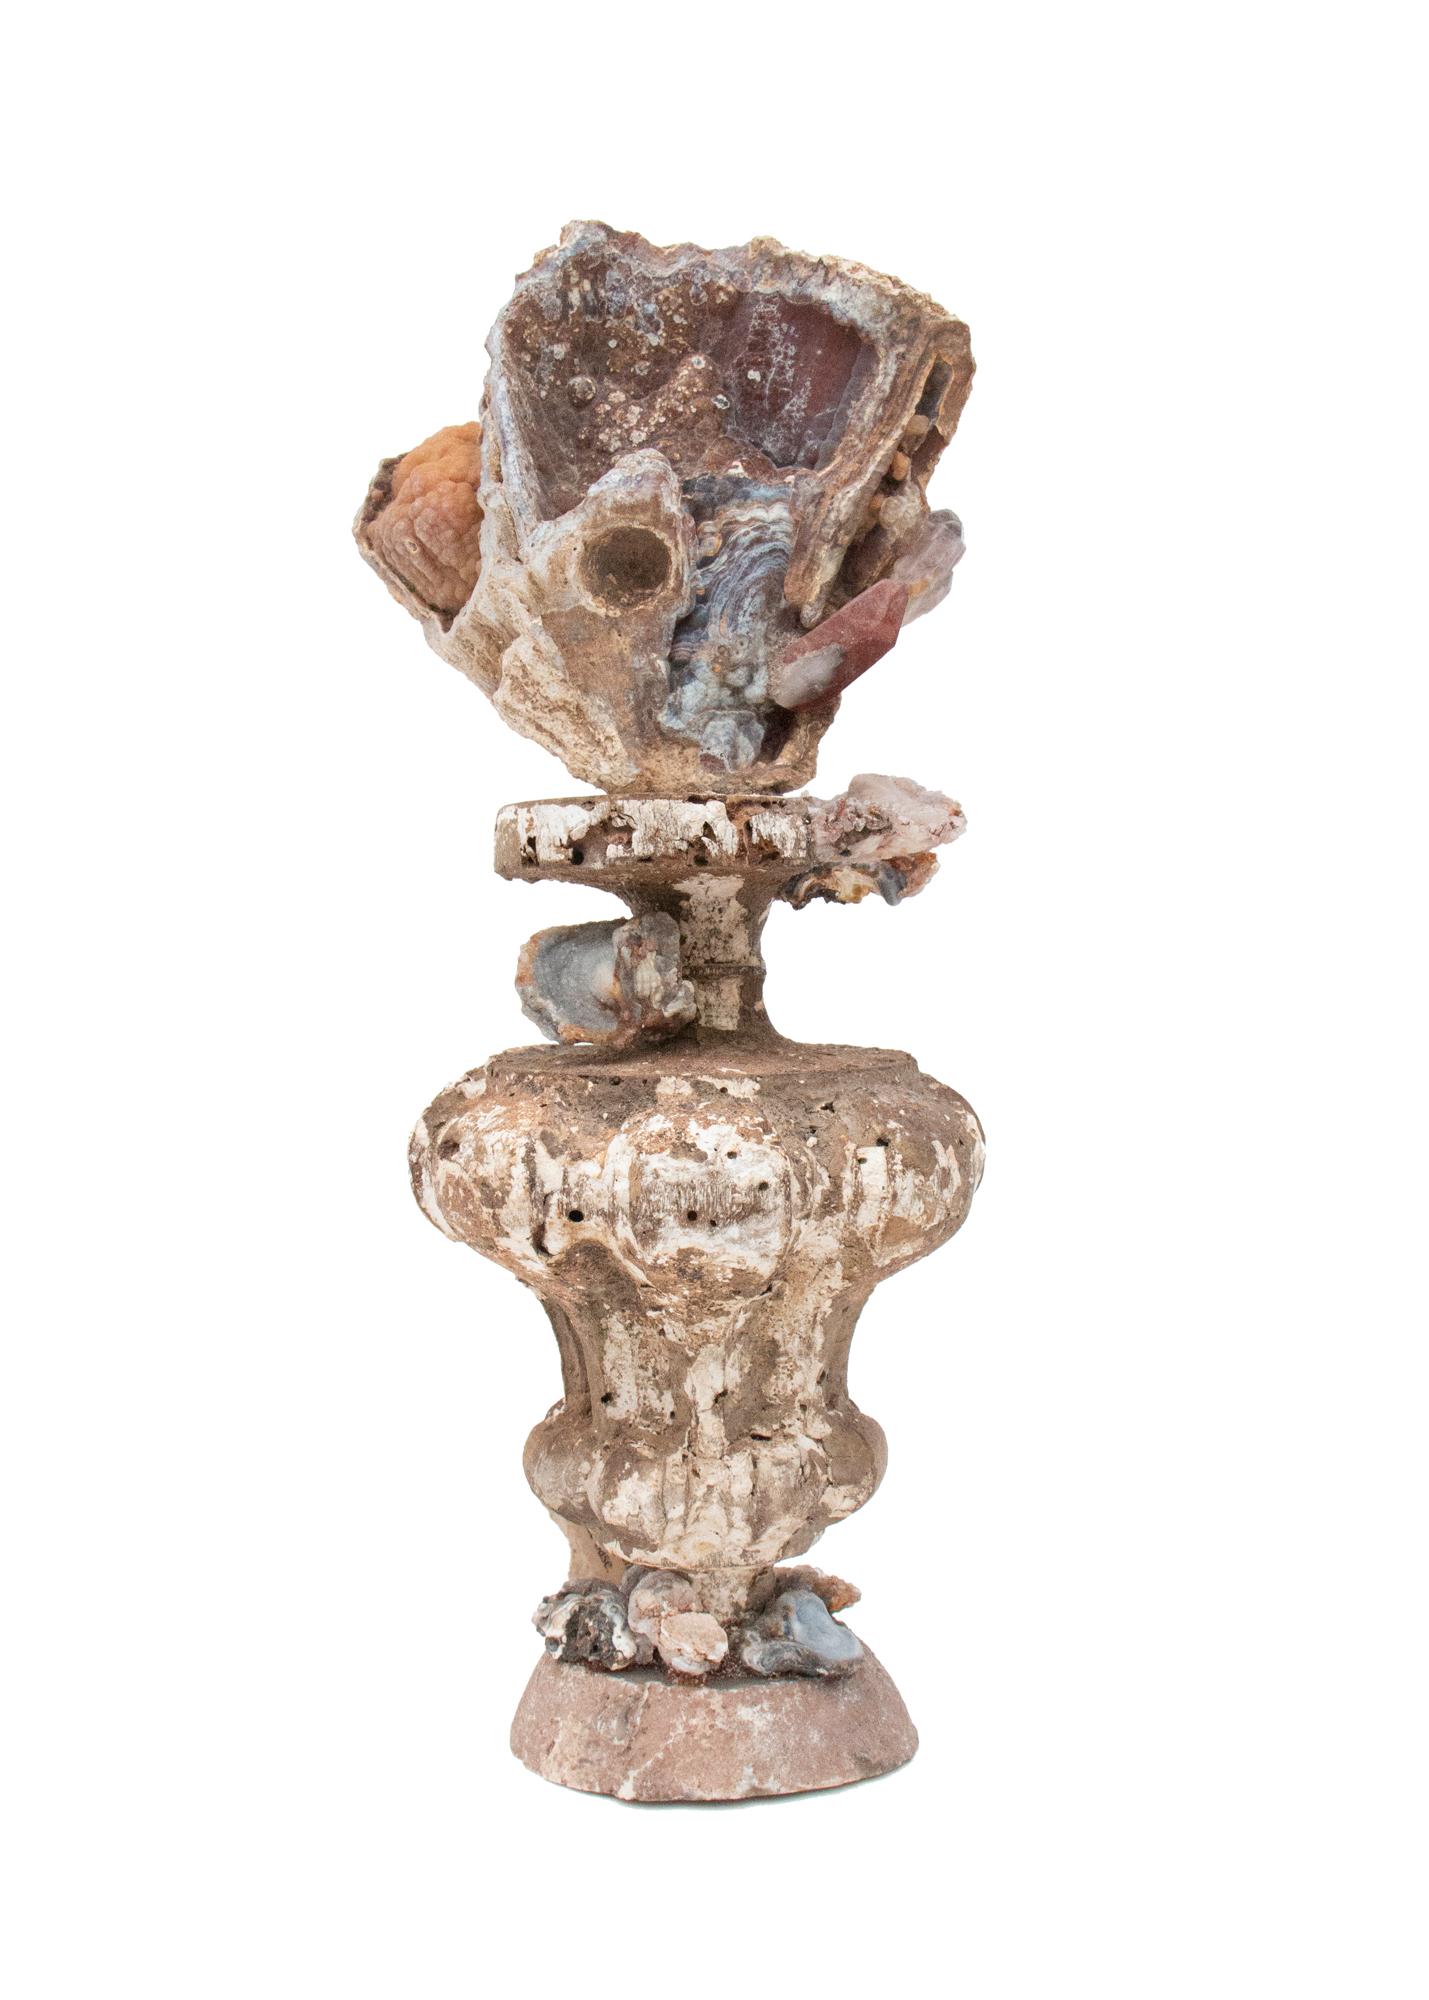 vase d'église italien du XVIIe siècle décoré de corail agate fossile, de cristaux de quartz fantôme rouge et de rosettes de calcédoine sur une base en agate polie.

Ce fragment provient d'une église de Florence. Il a été trouvé et sauvé de